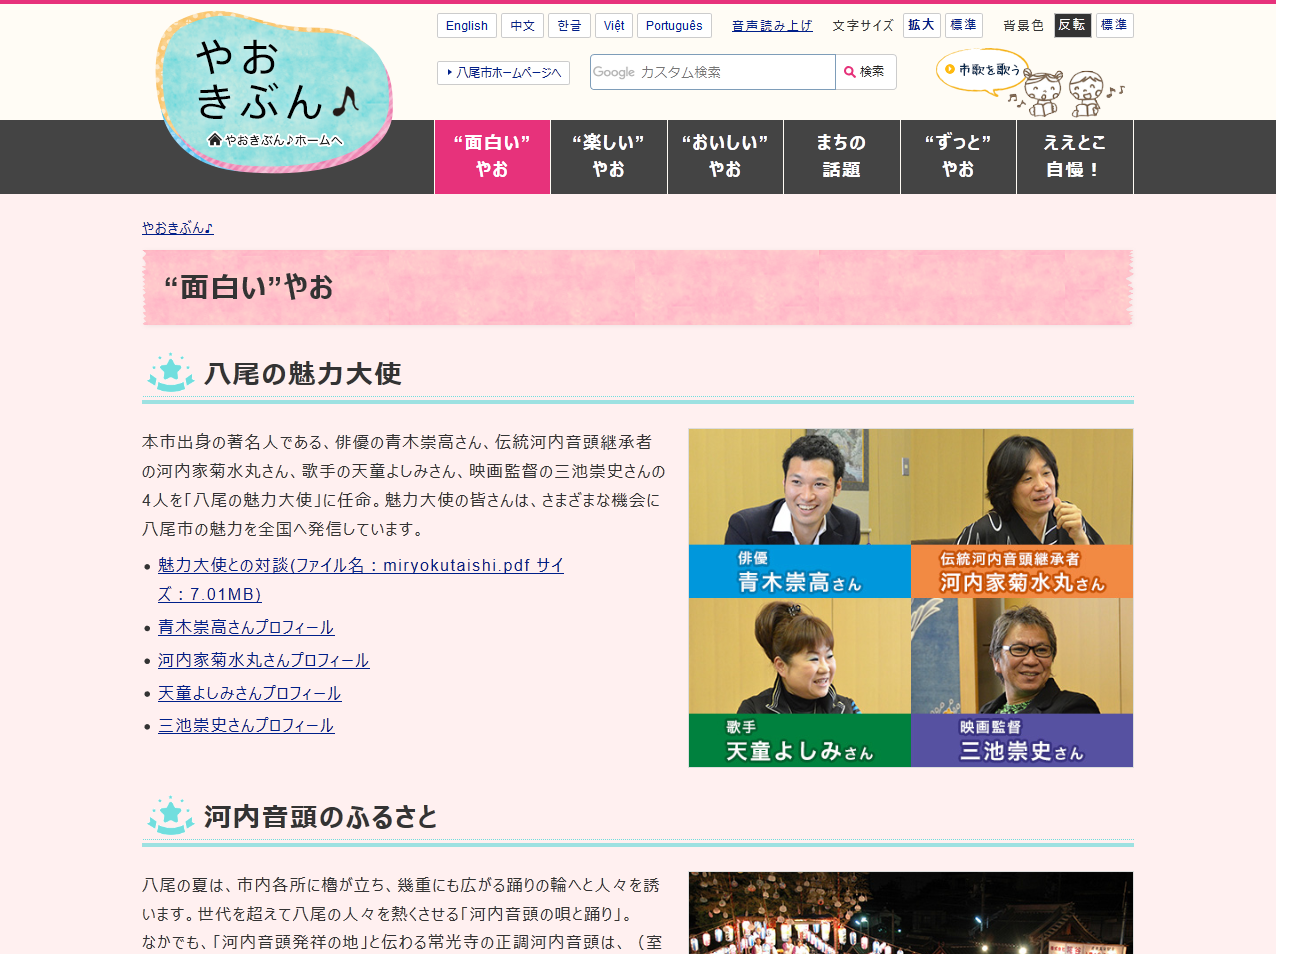 八尾市役所公式ホームページサブサイトやおきぶんの面白いやおページキャプチャ画像